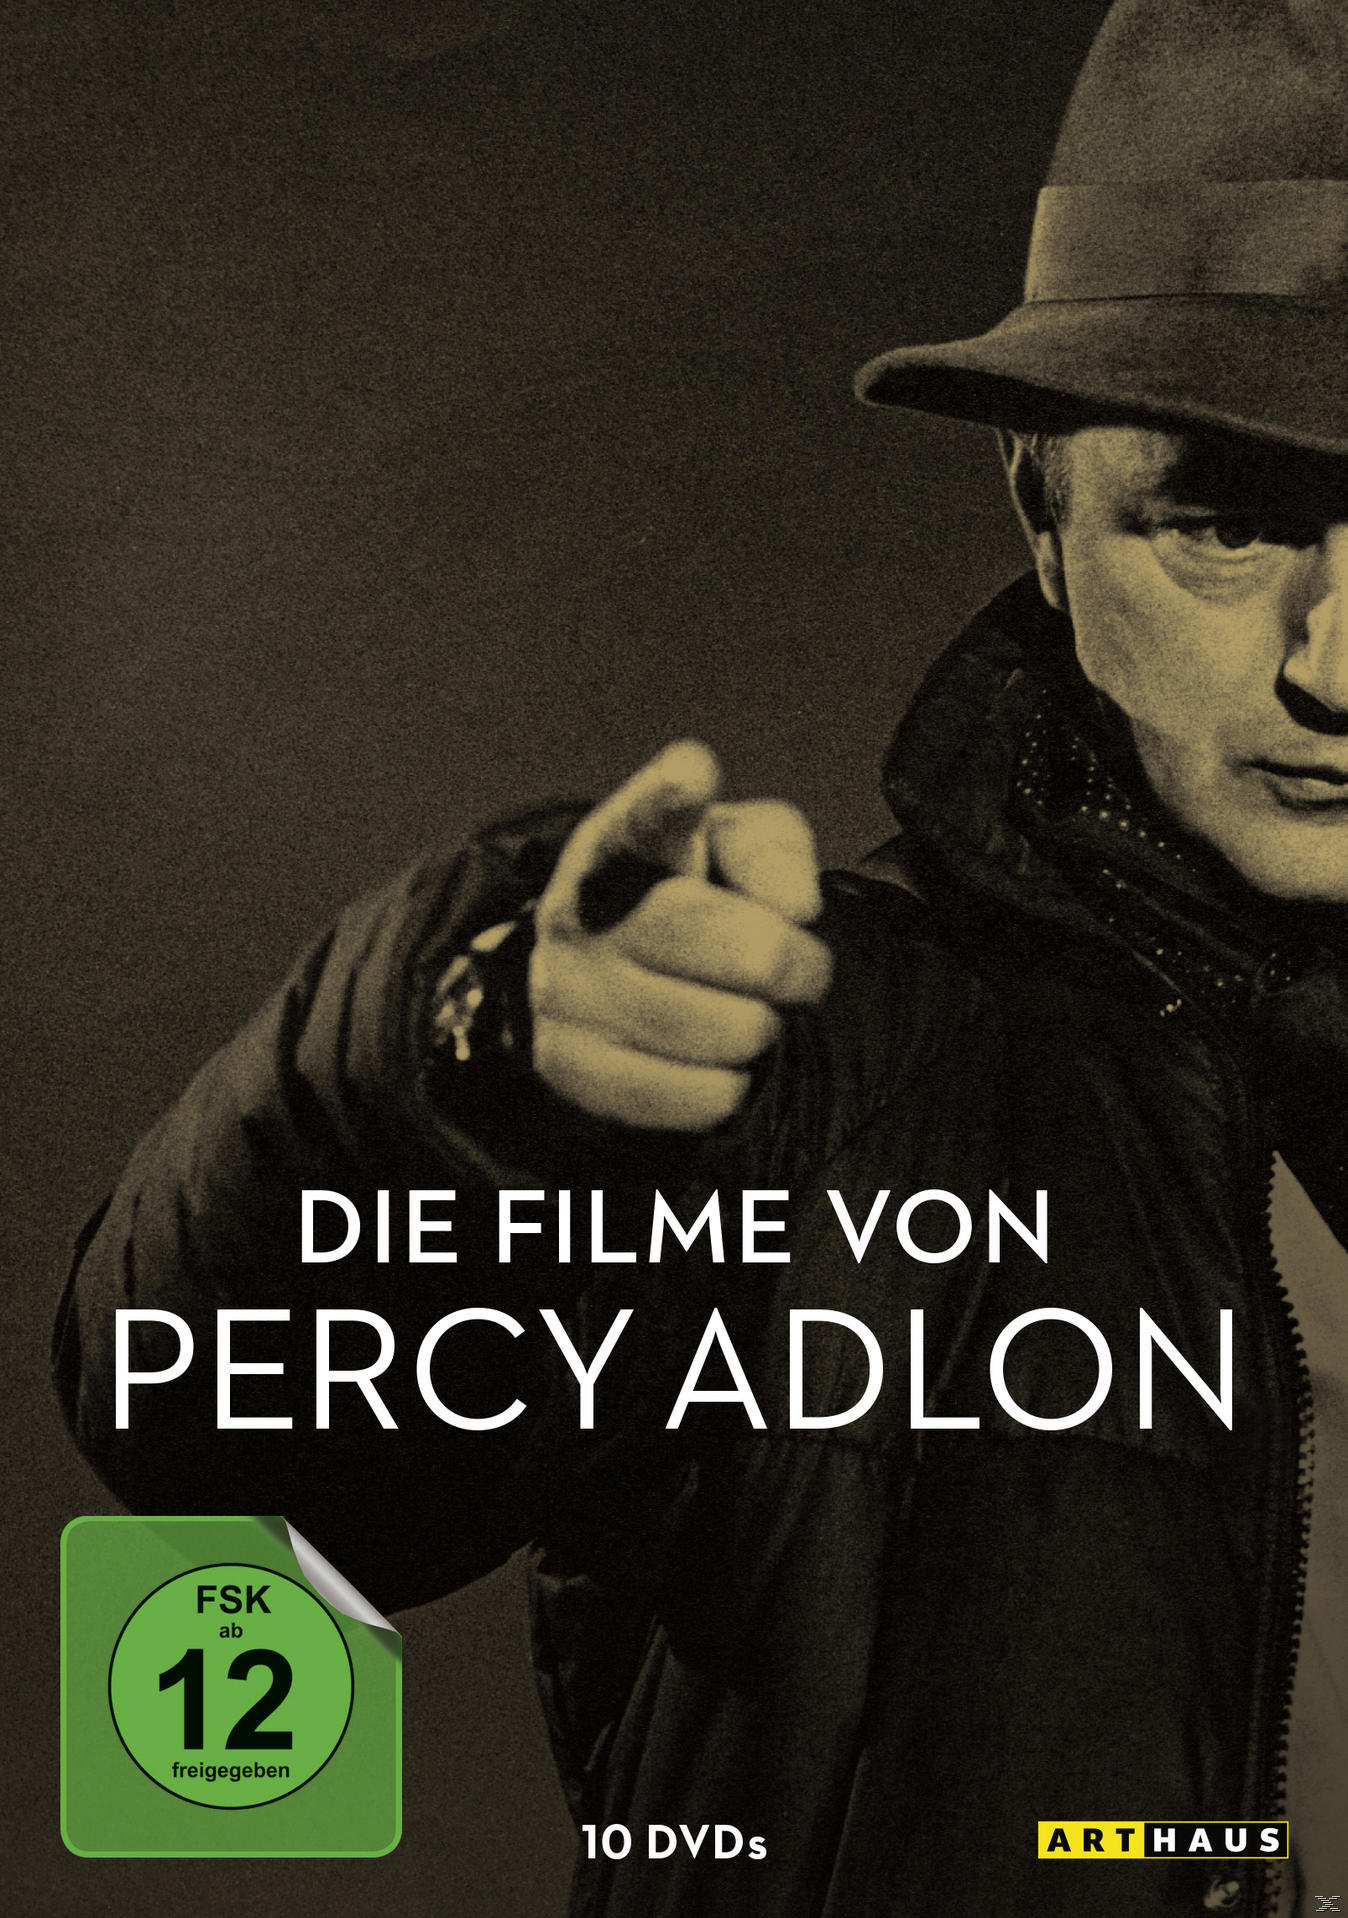 Adlon Percy von Filme DVD Die